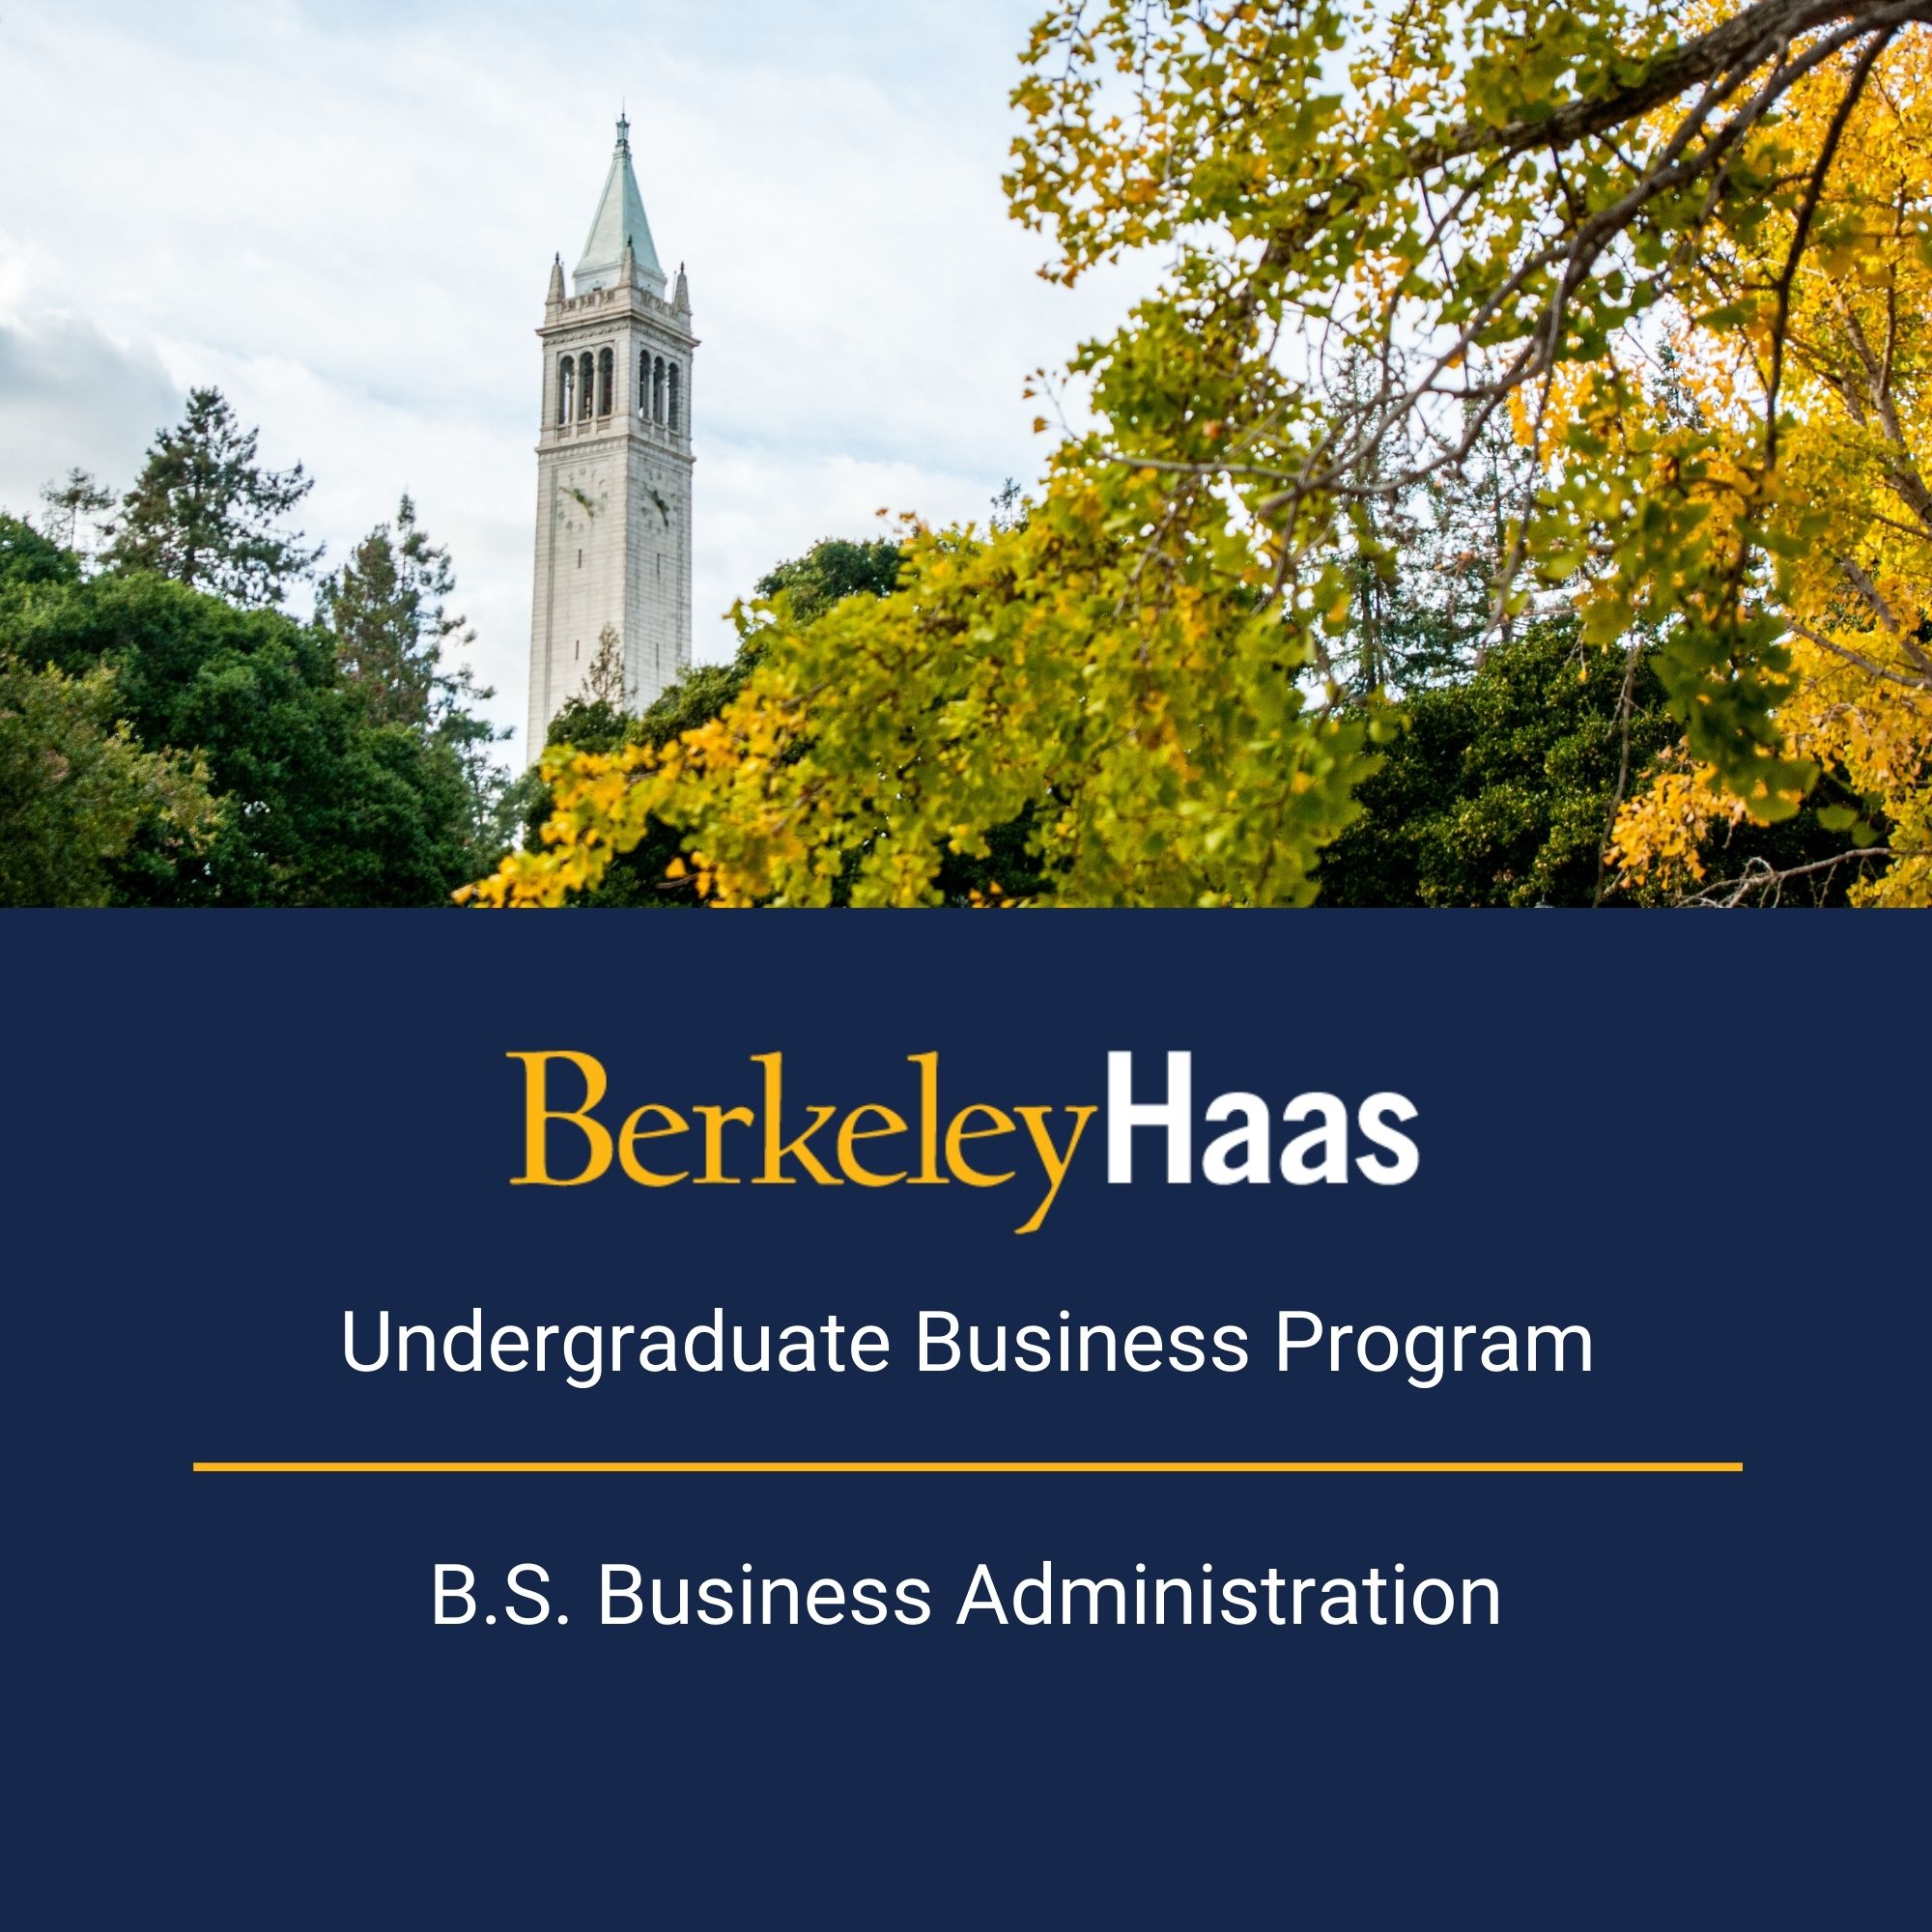 Undergraduate Business Program brochure (PDF)